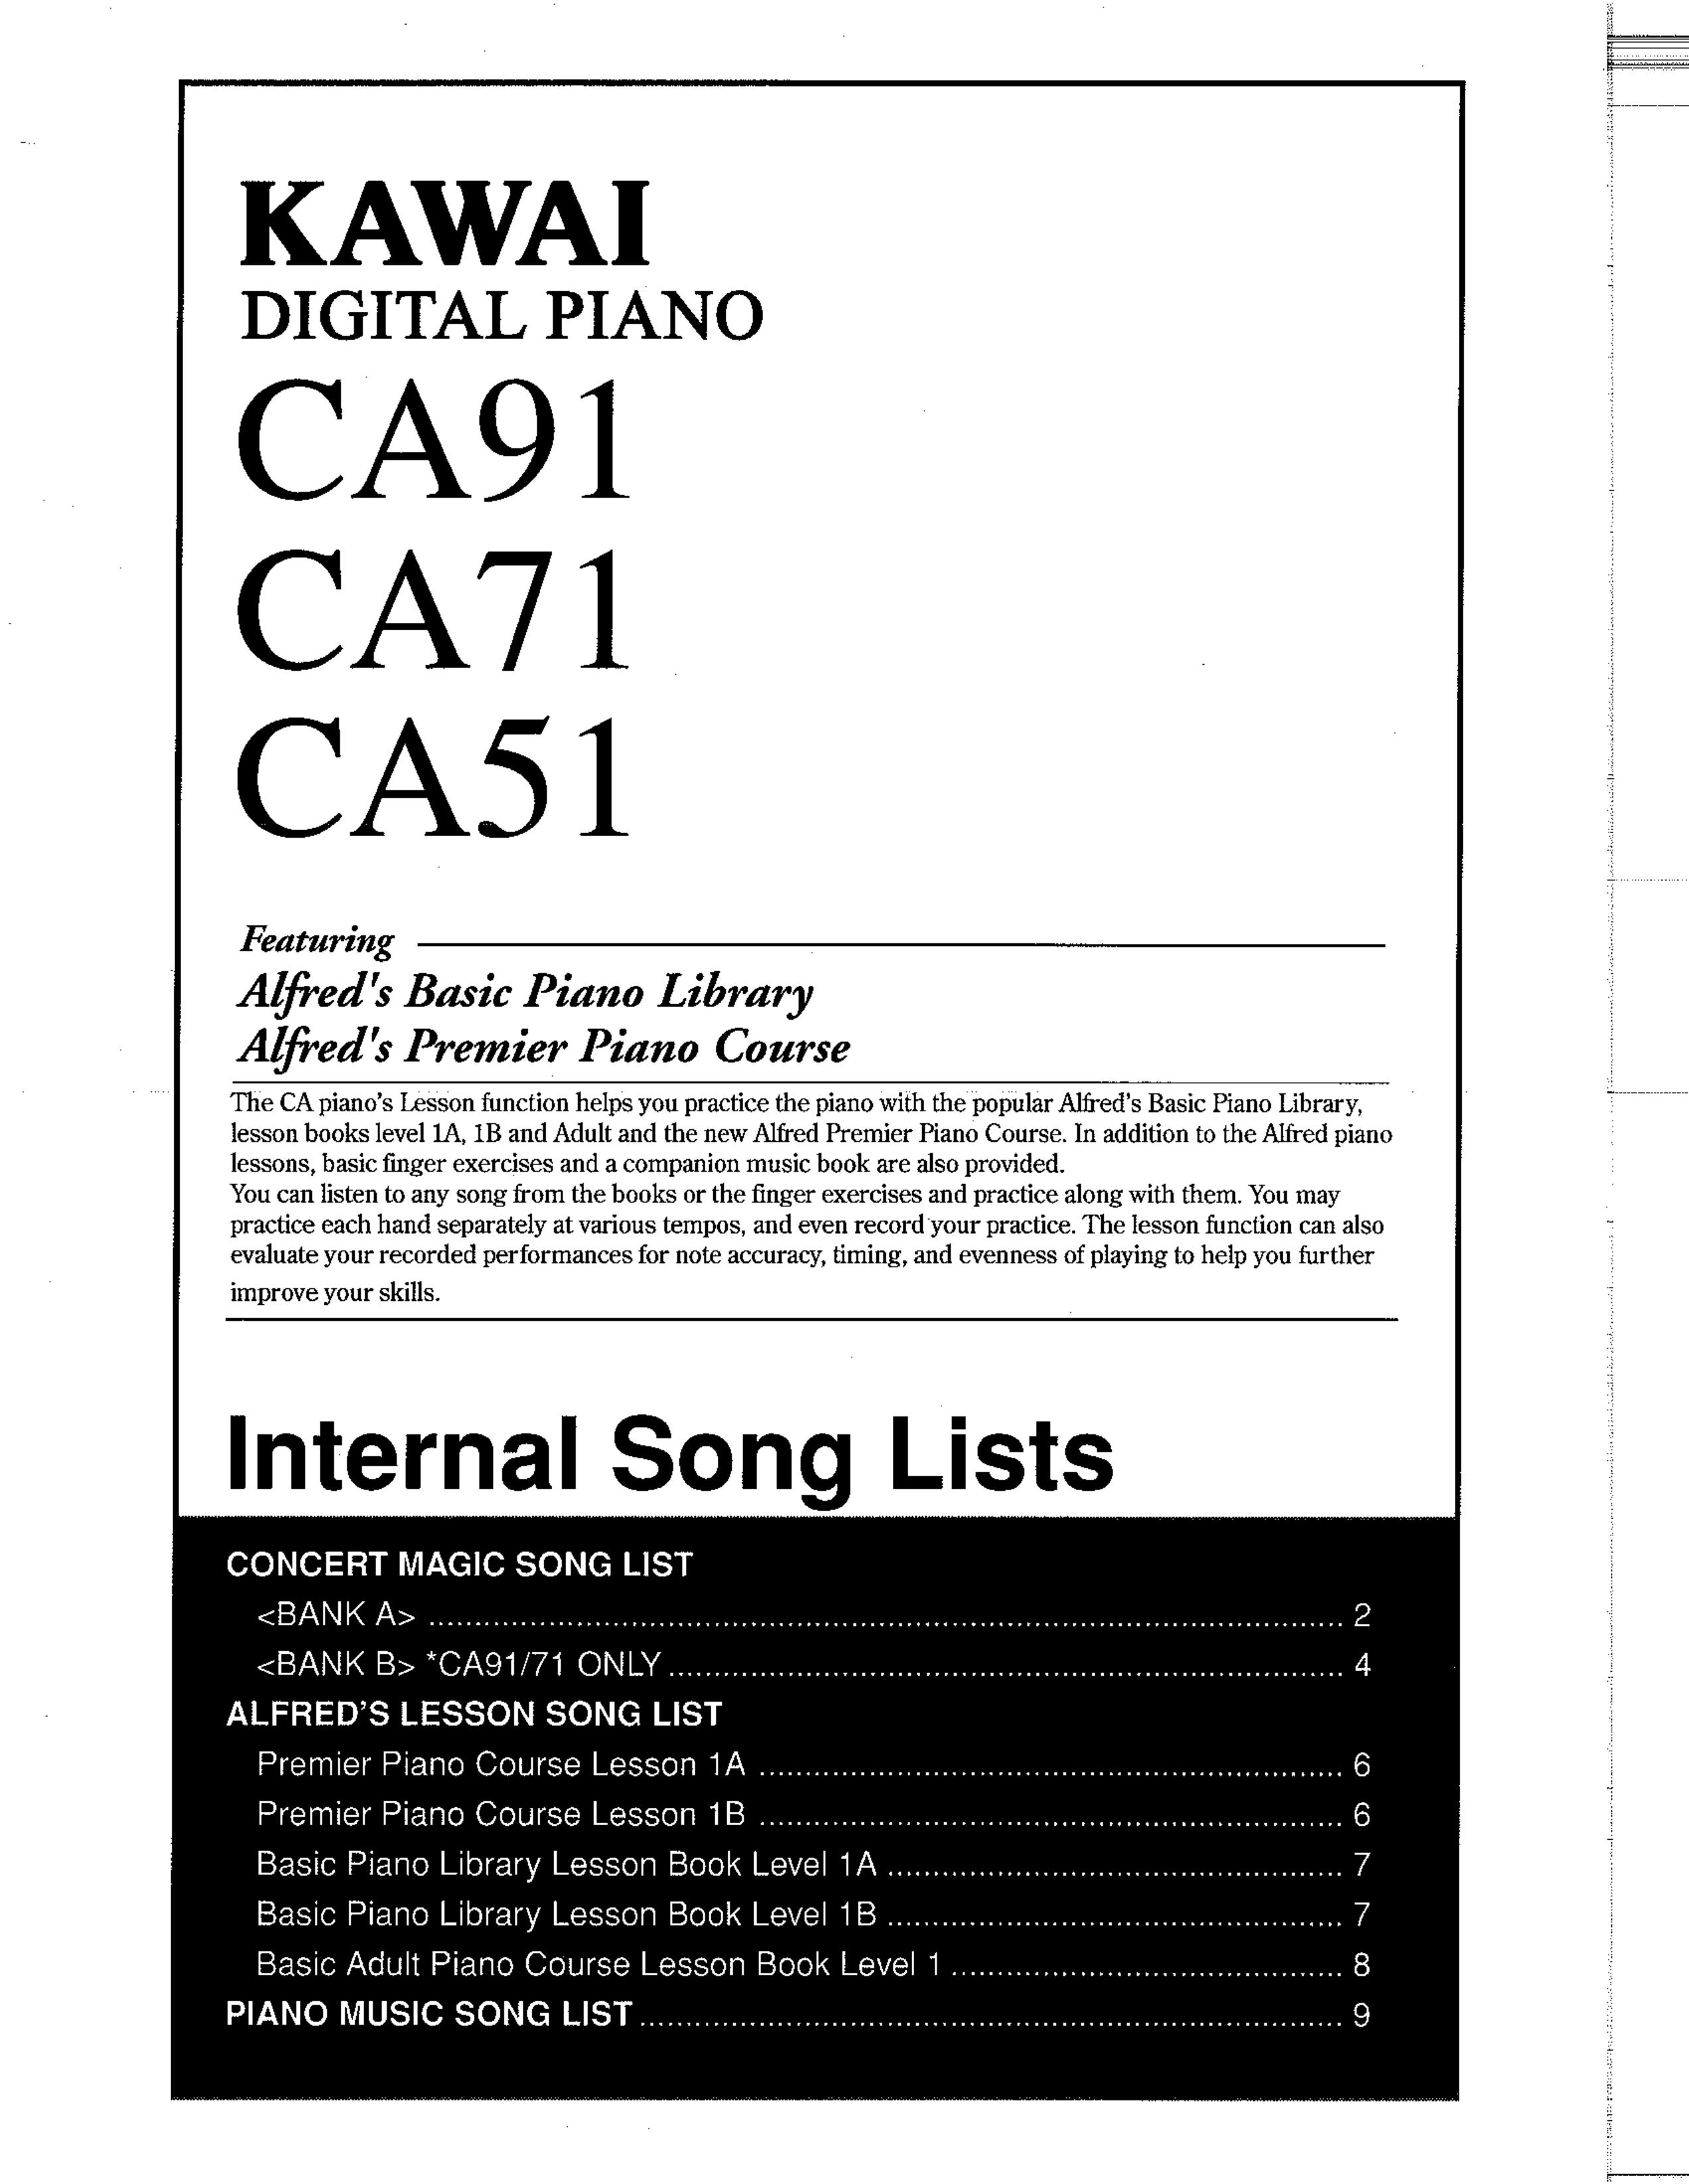 Kawai CA71 Electronic Keyboard User Manual